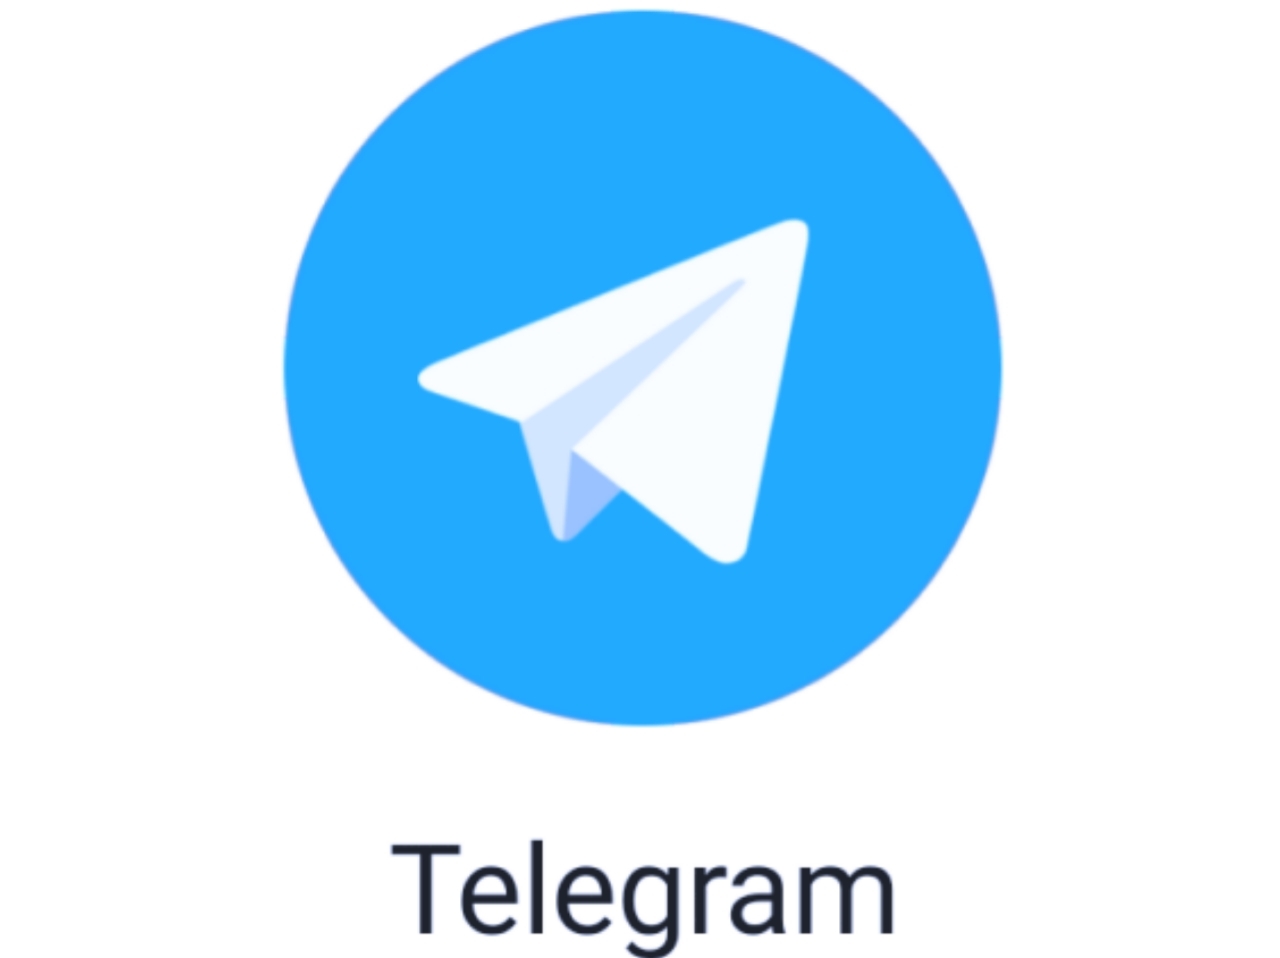 Telegram के ये 7 शानदार फीचर्स जो आपको पता होने चाहिए, आइए जाने इसमें क्या है खास